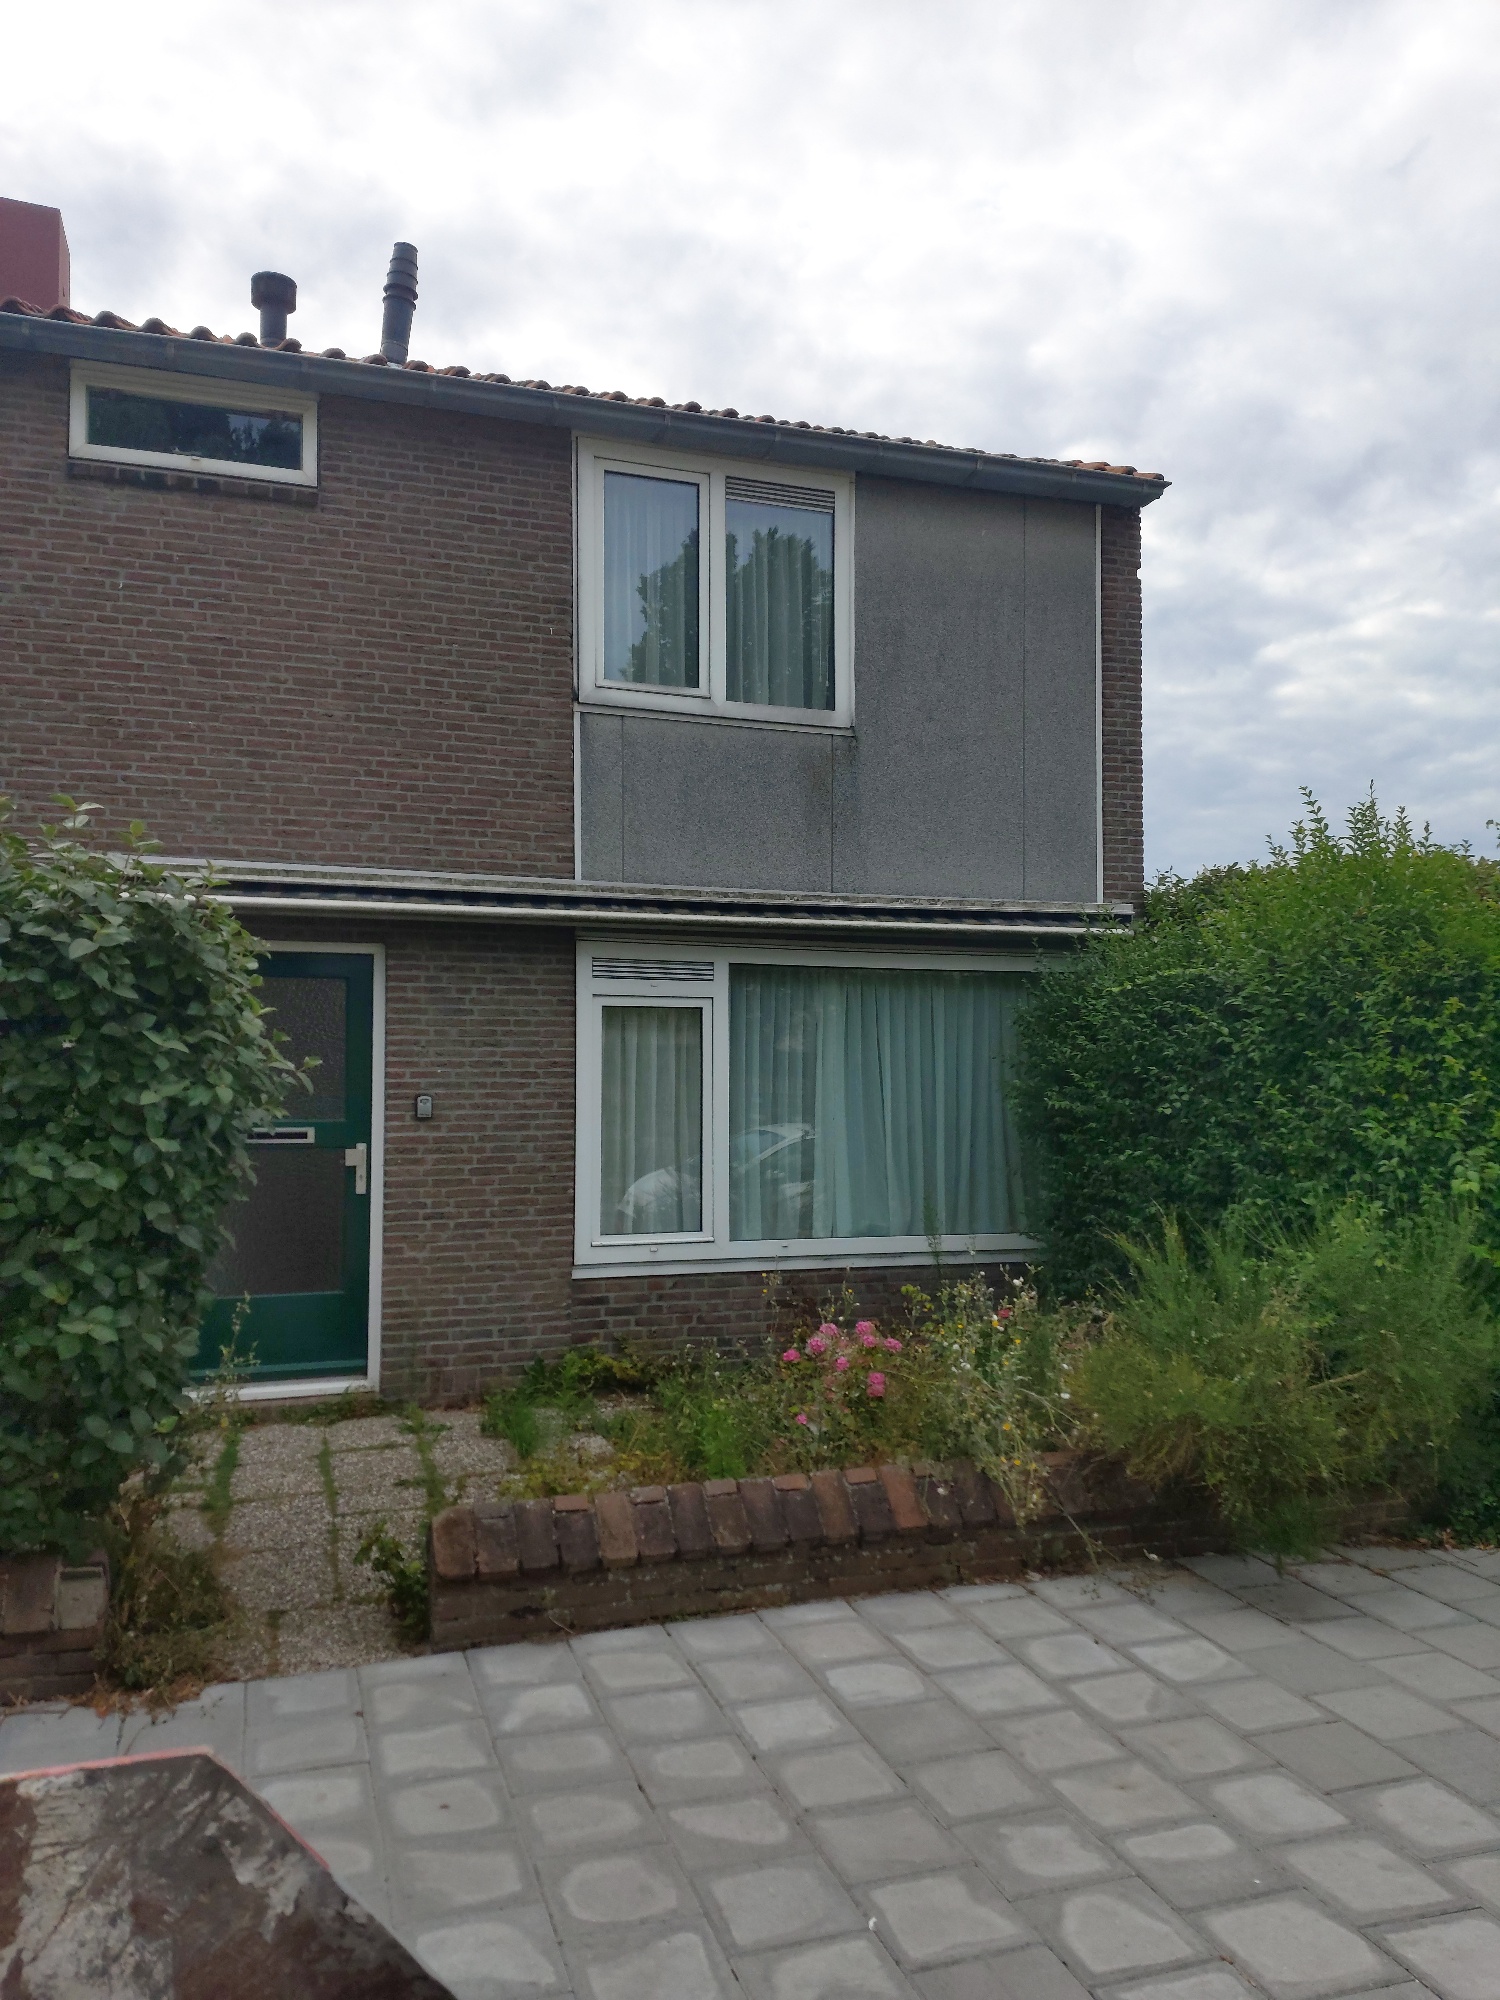 Weteringkade 56, 2201 SJ Noordwijk, Nederland